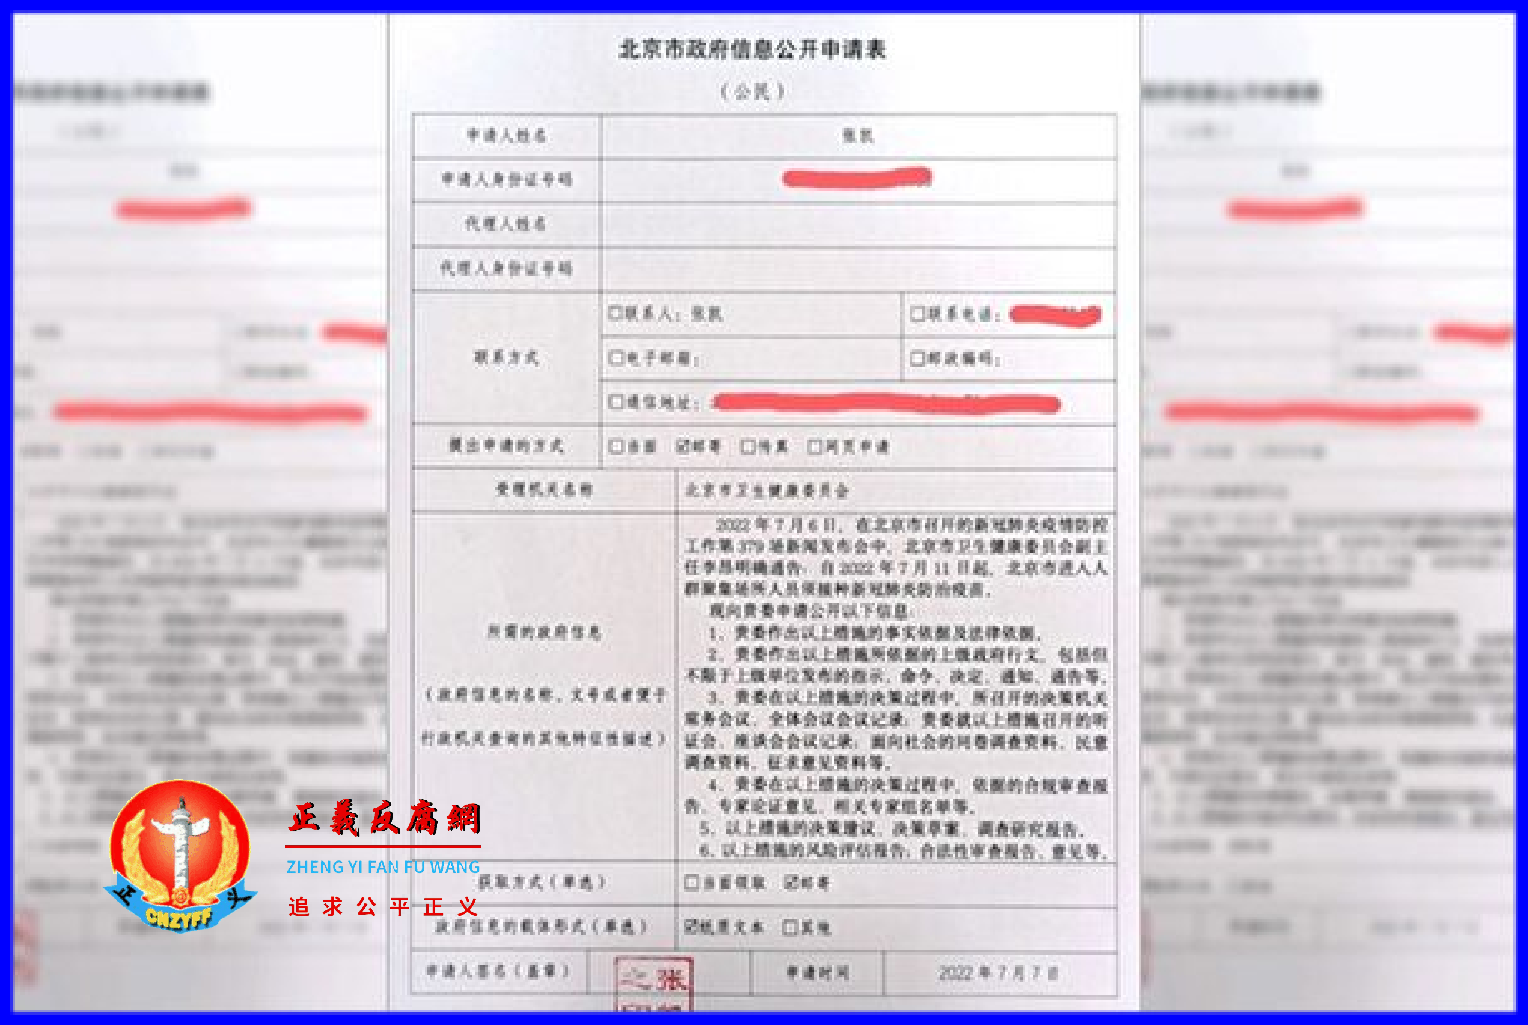 北京律师张凯向北京市卫生健康委员会推出的一项接种疫苗新规，7月7日向北京卫健委提交了信息公开申请。.png